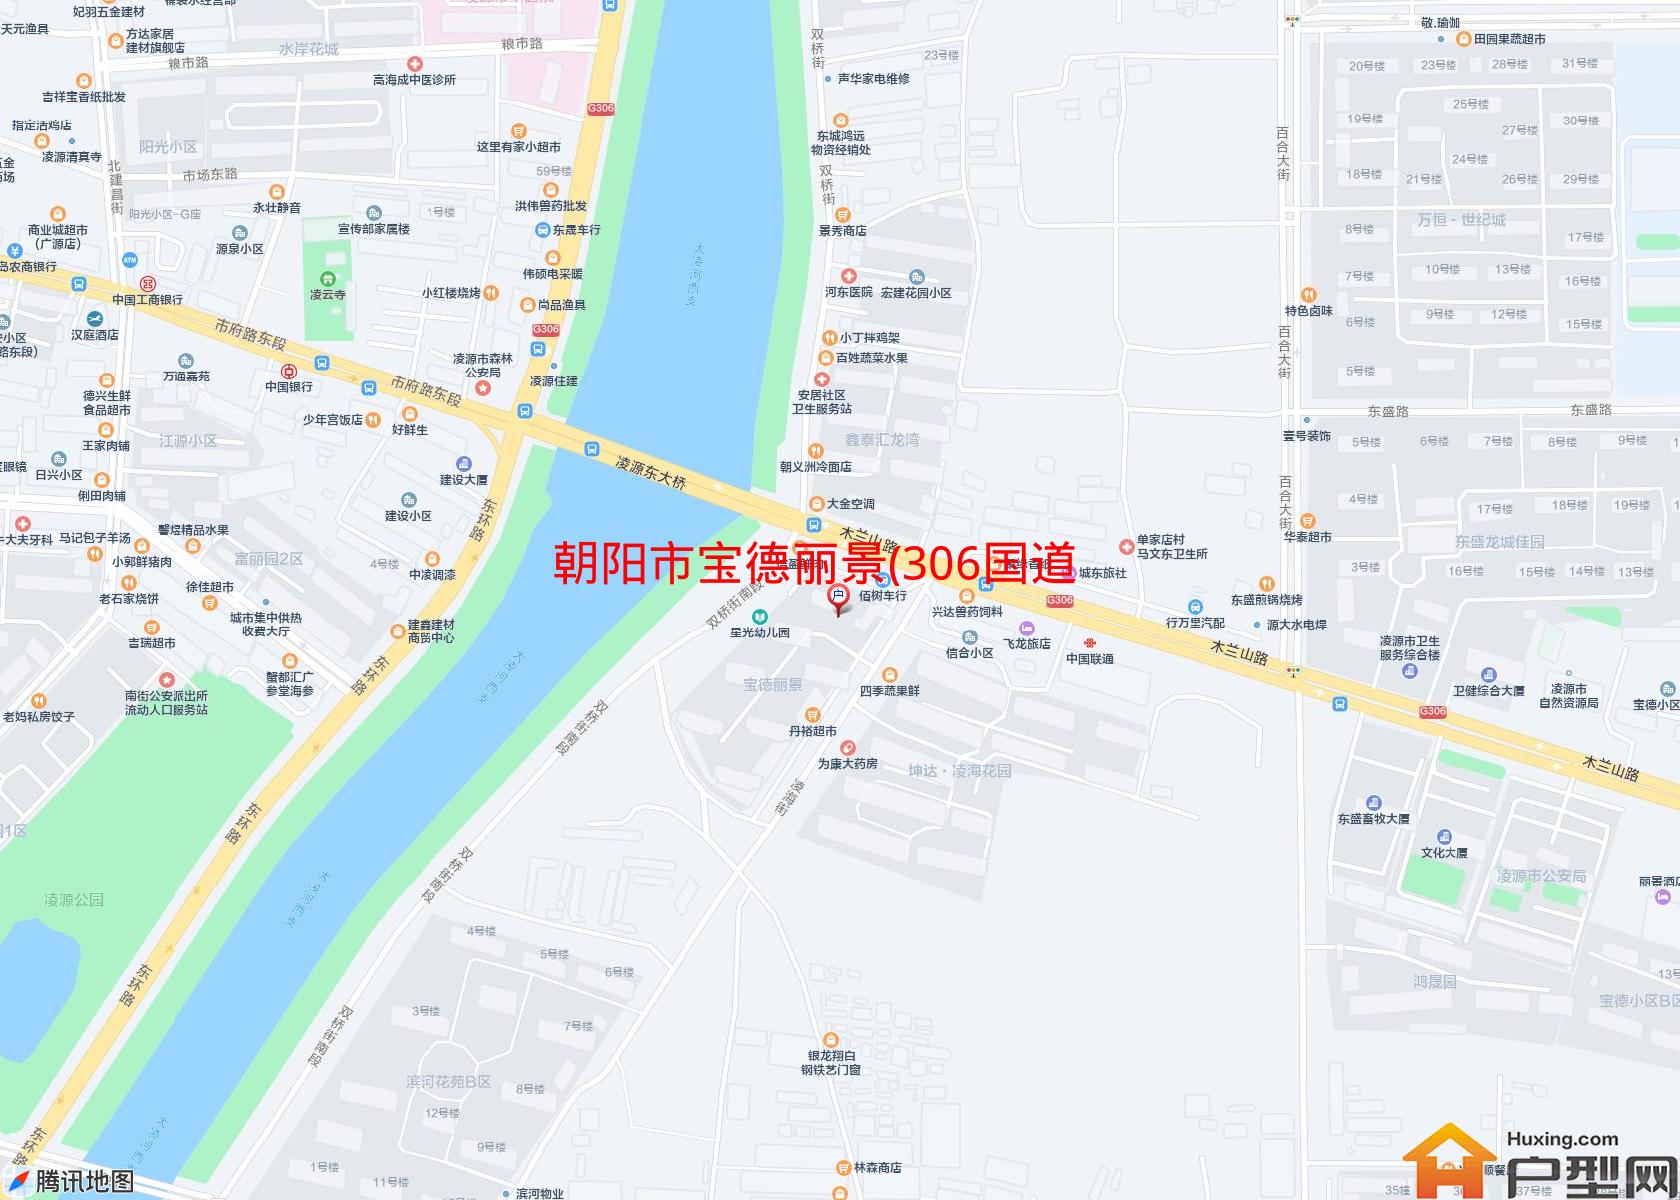 宝德丽景(306国道)小区 - 户型网